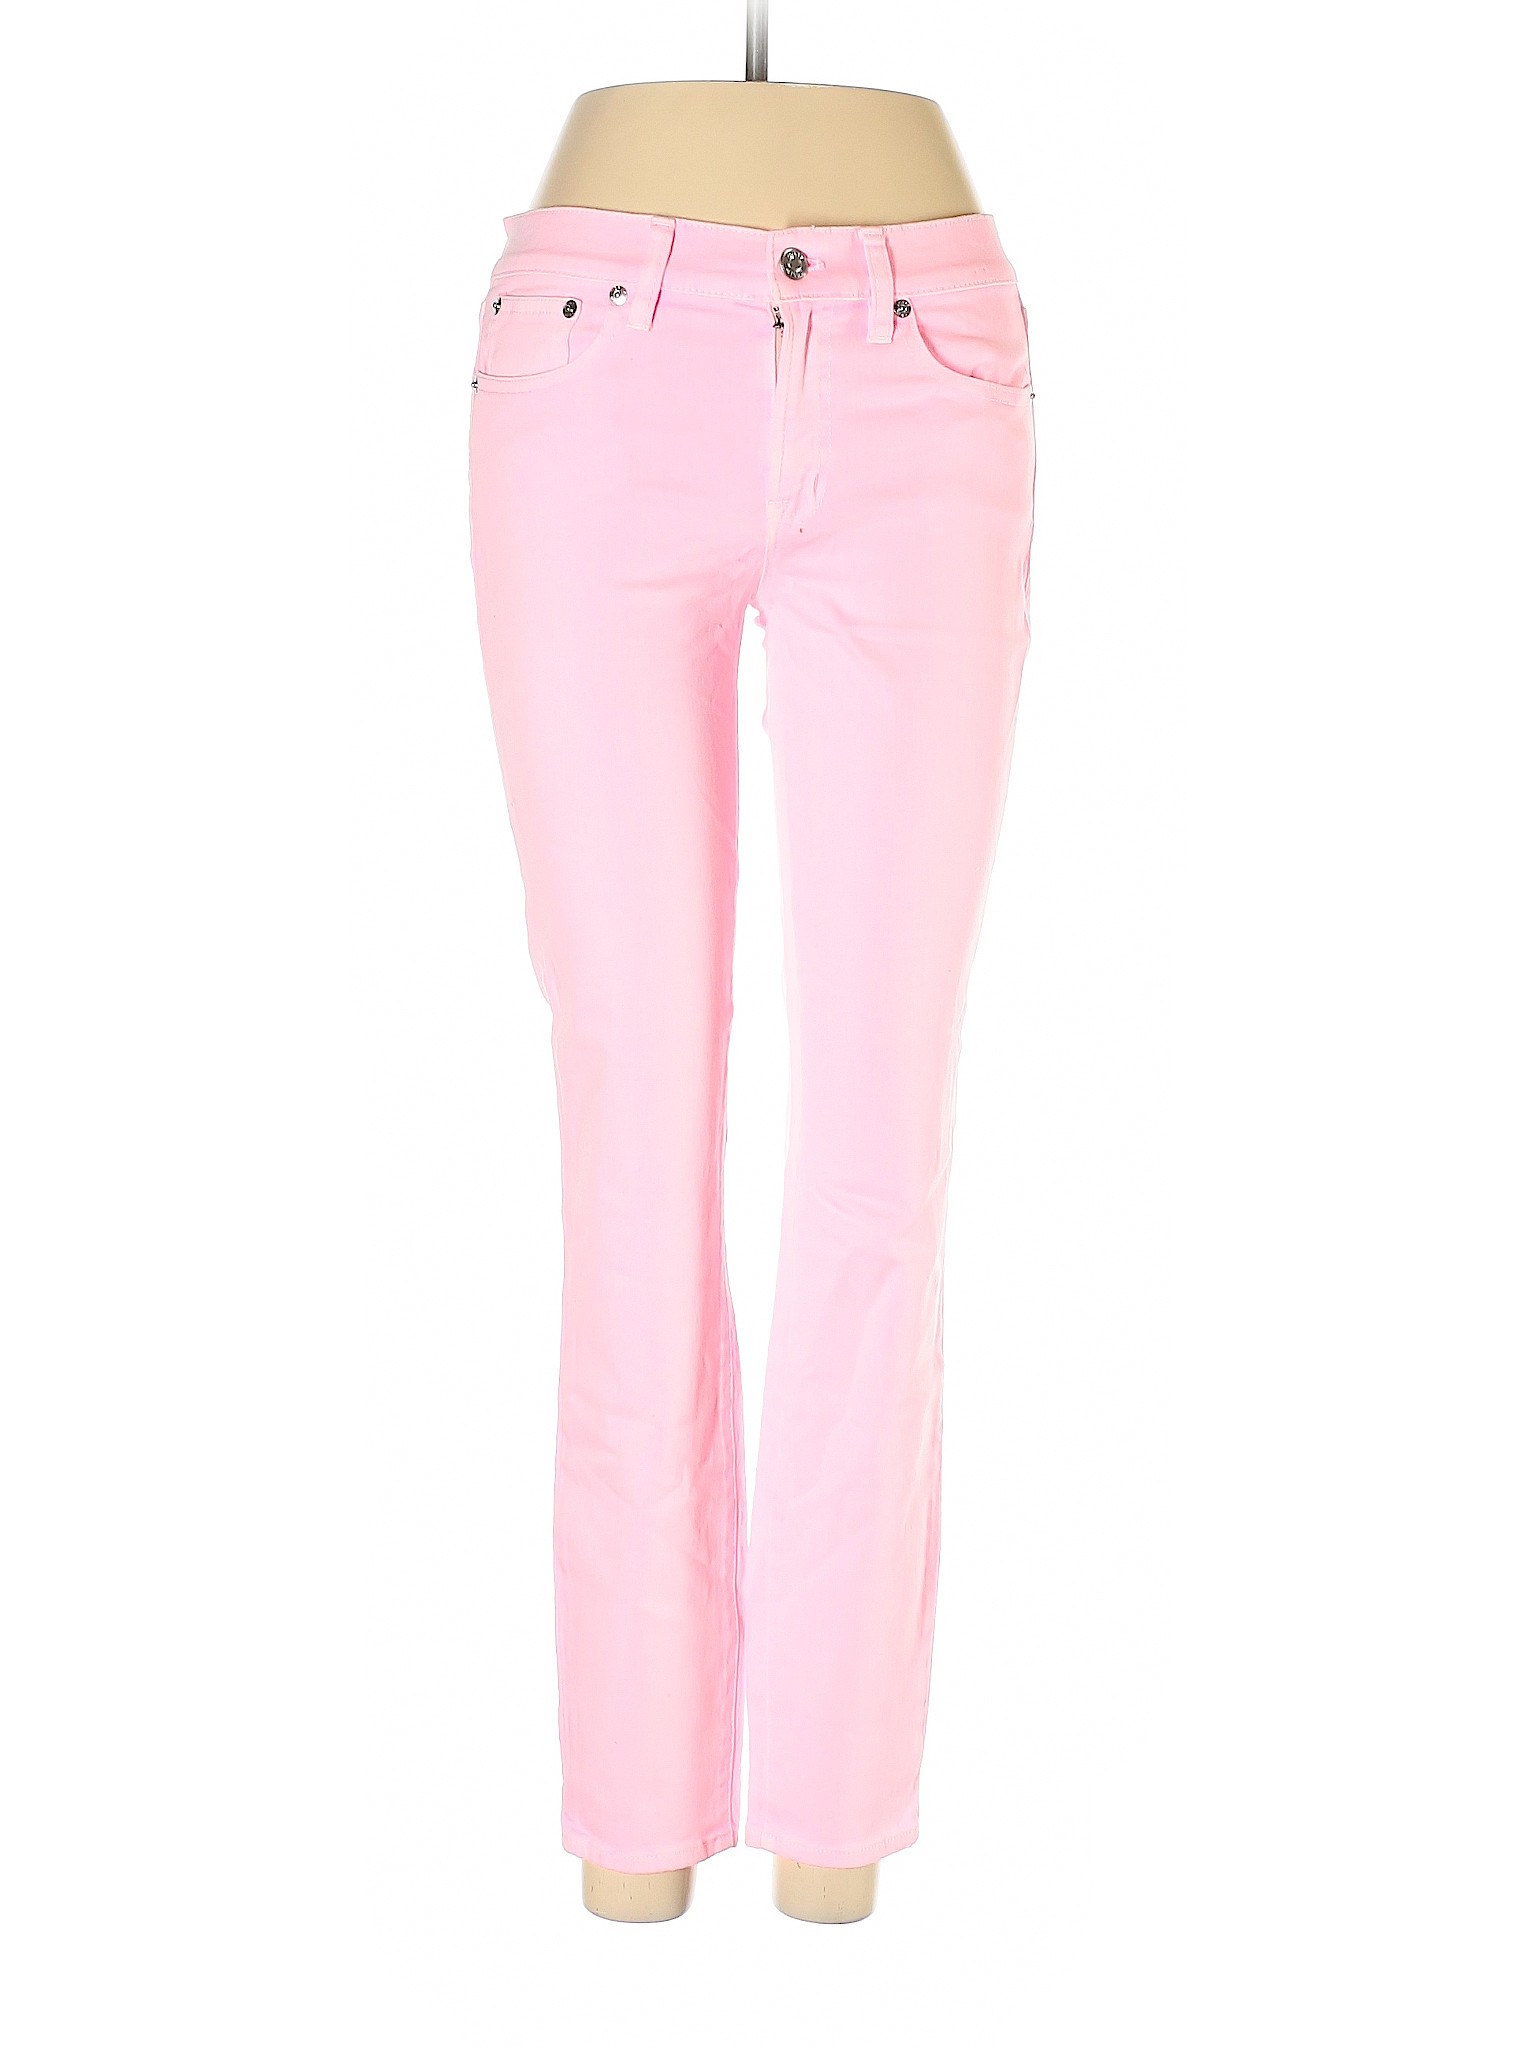 NWT J.Crew Women Pink Jeans 27W | eBay